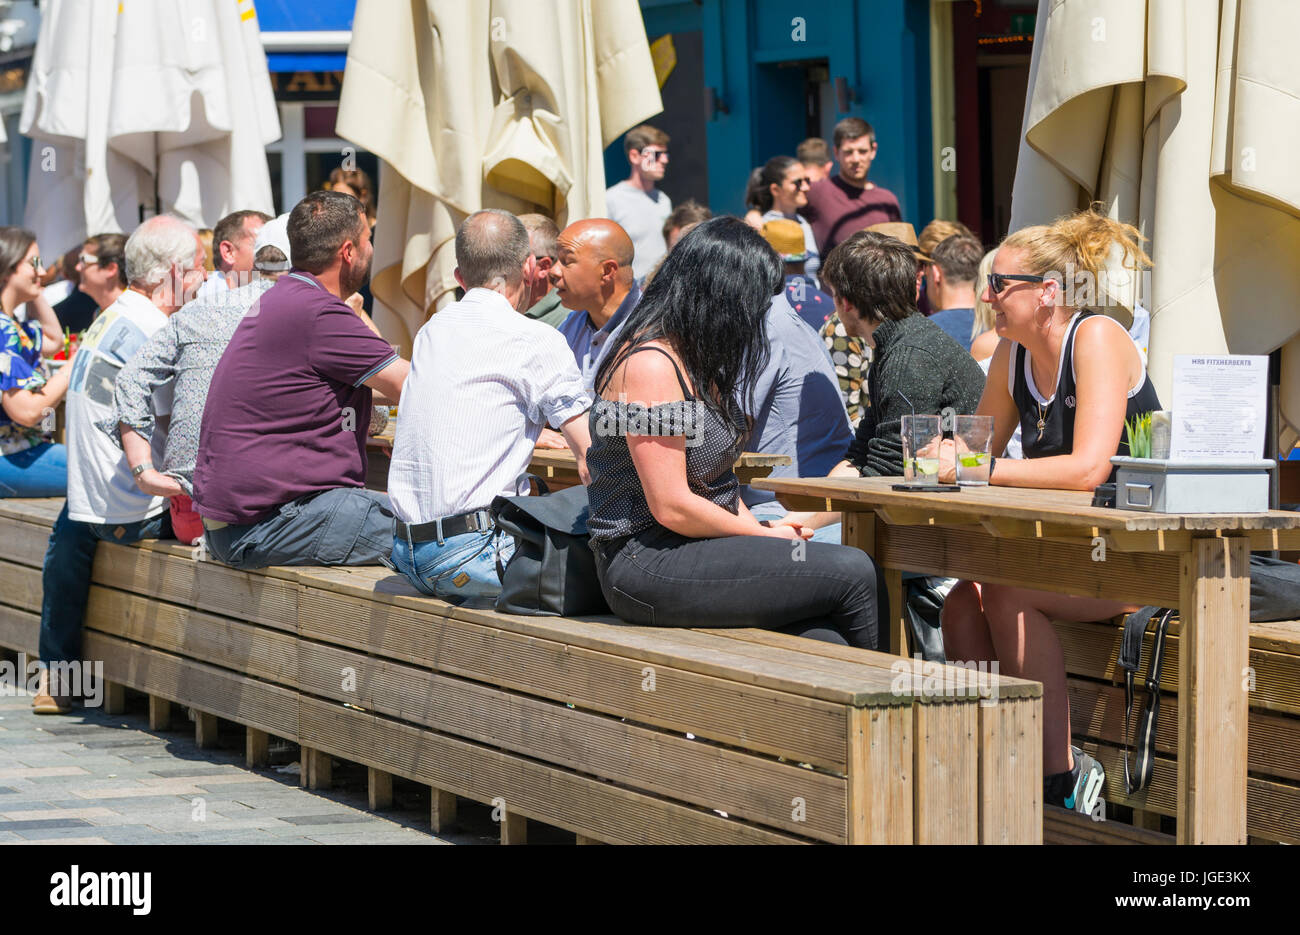 Gente sentada fuera en mesas de madera y bancos en una cafetería y bar en un caluroso día de verano. Foto de stock